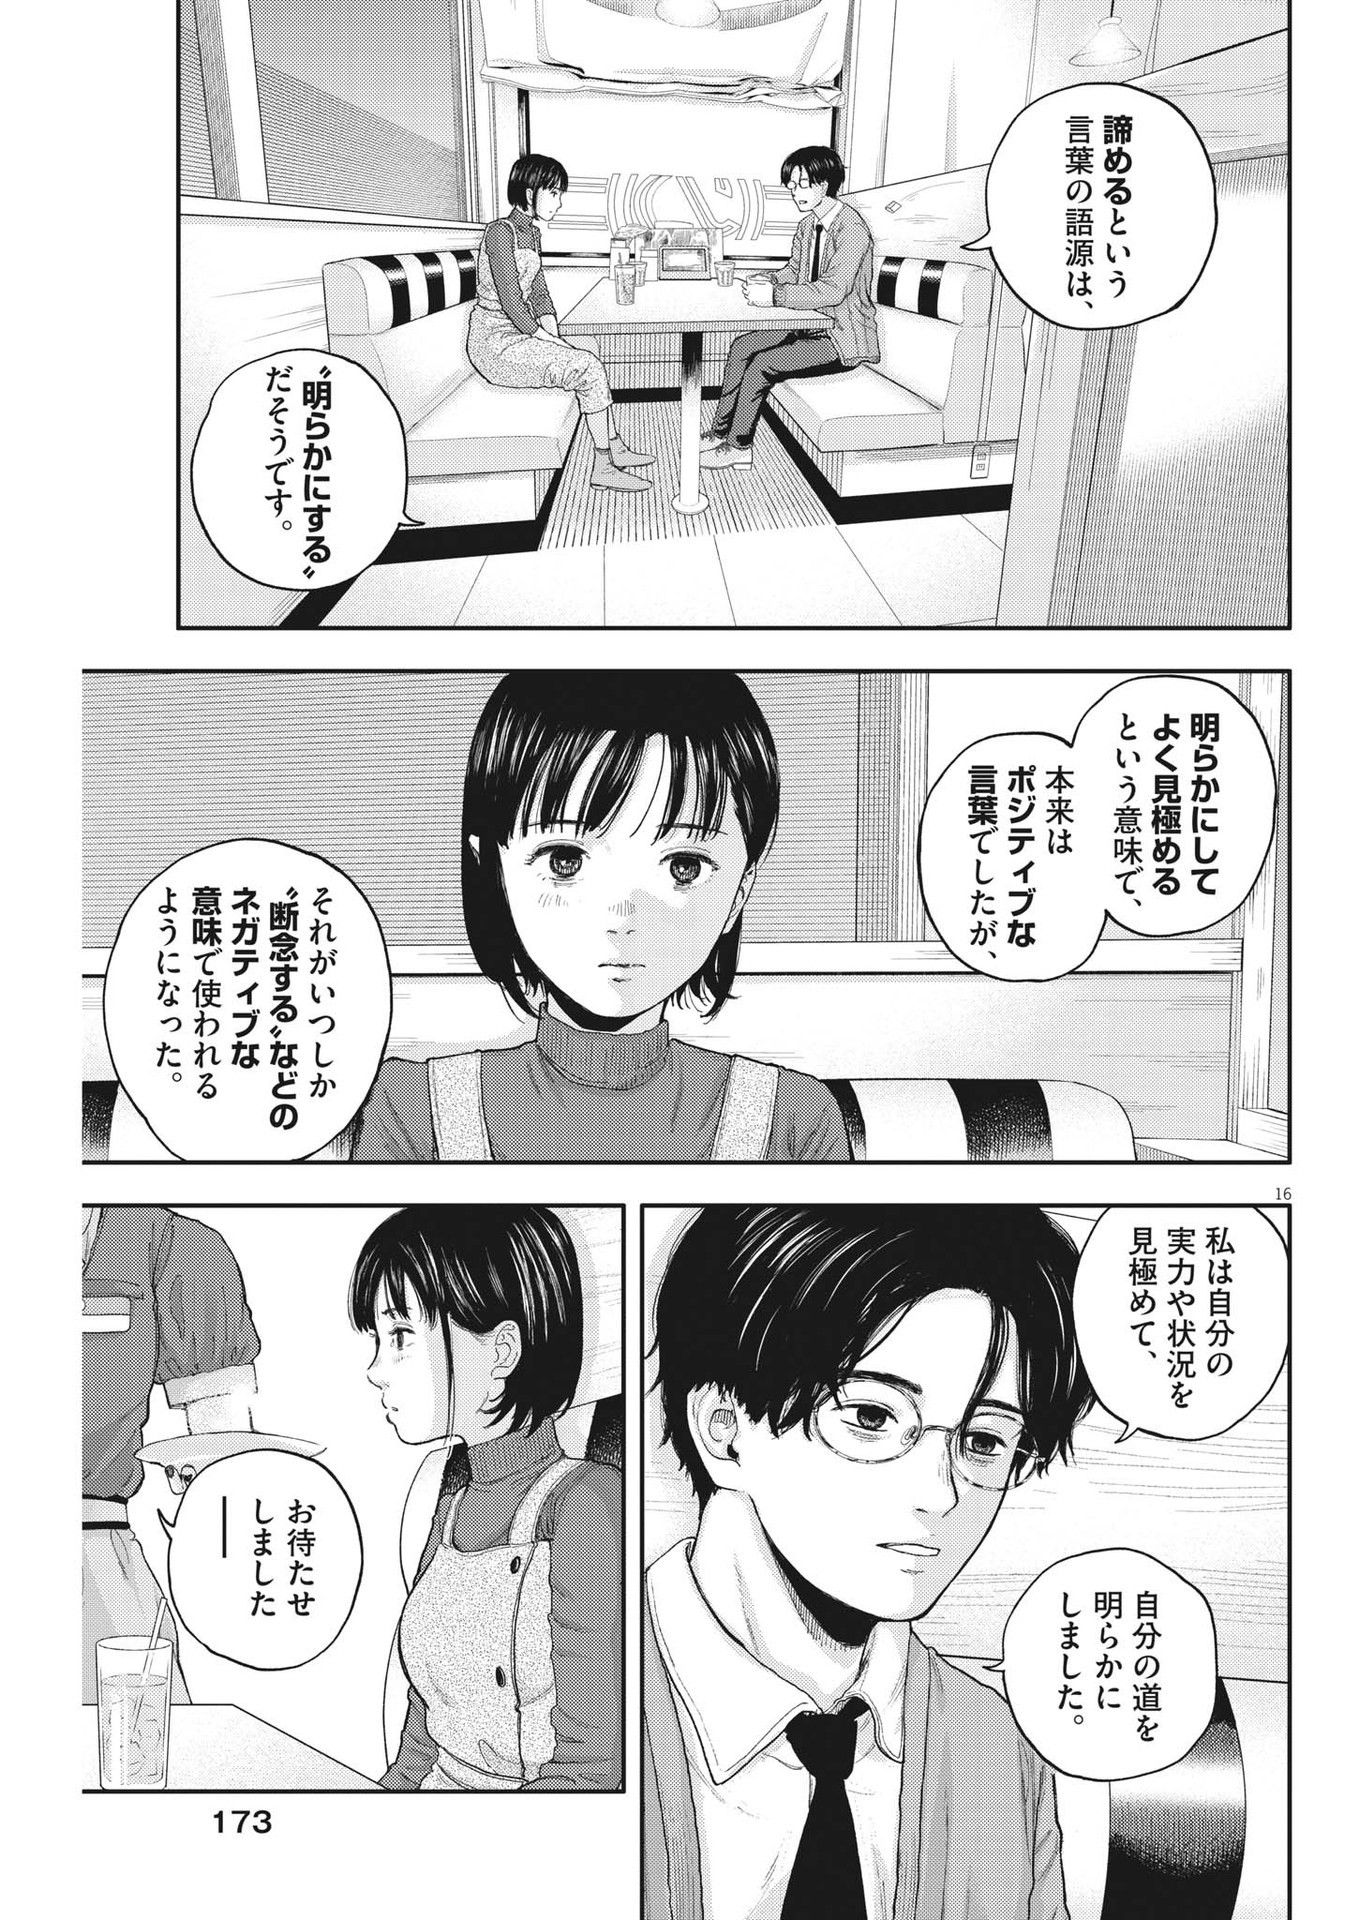 Yumenashi-sensei no Shinroshidou - Chapter 2 - Page 16